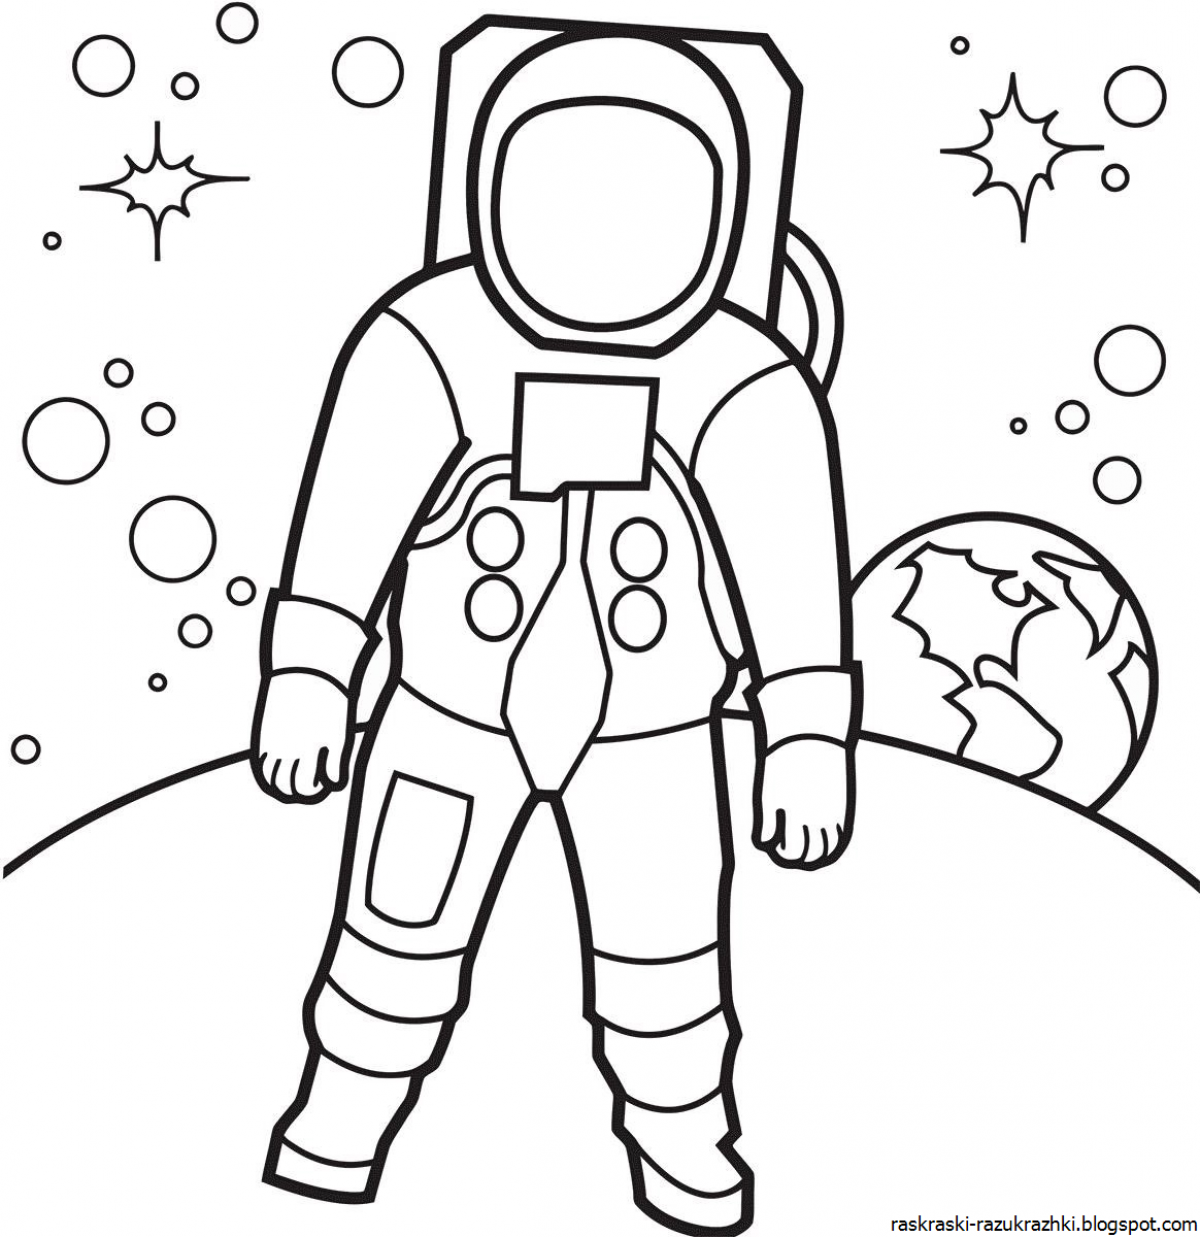 Раскраска космос для детей 3 лет. Космонавт раскраска для детей. Раскраска для малышей. Космос. Космонавтика раскраски для детей. Раскраска. В космосе.